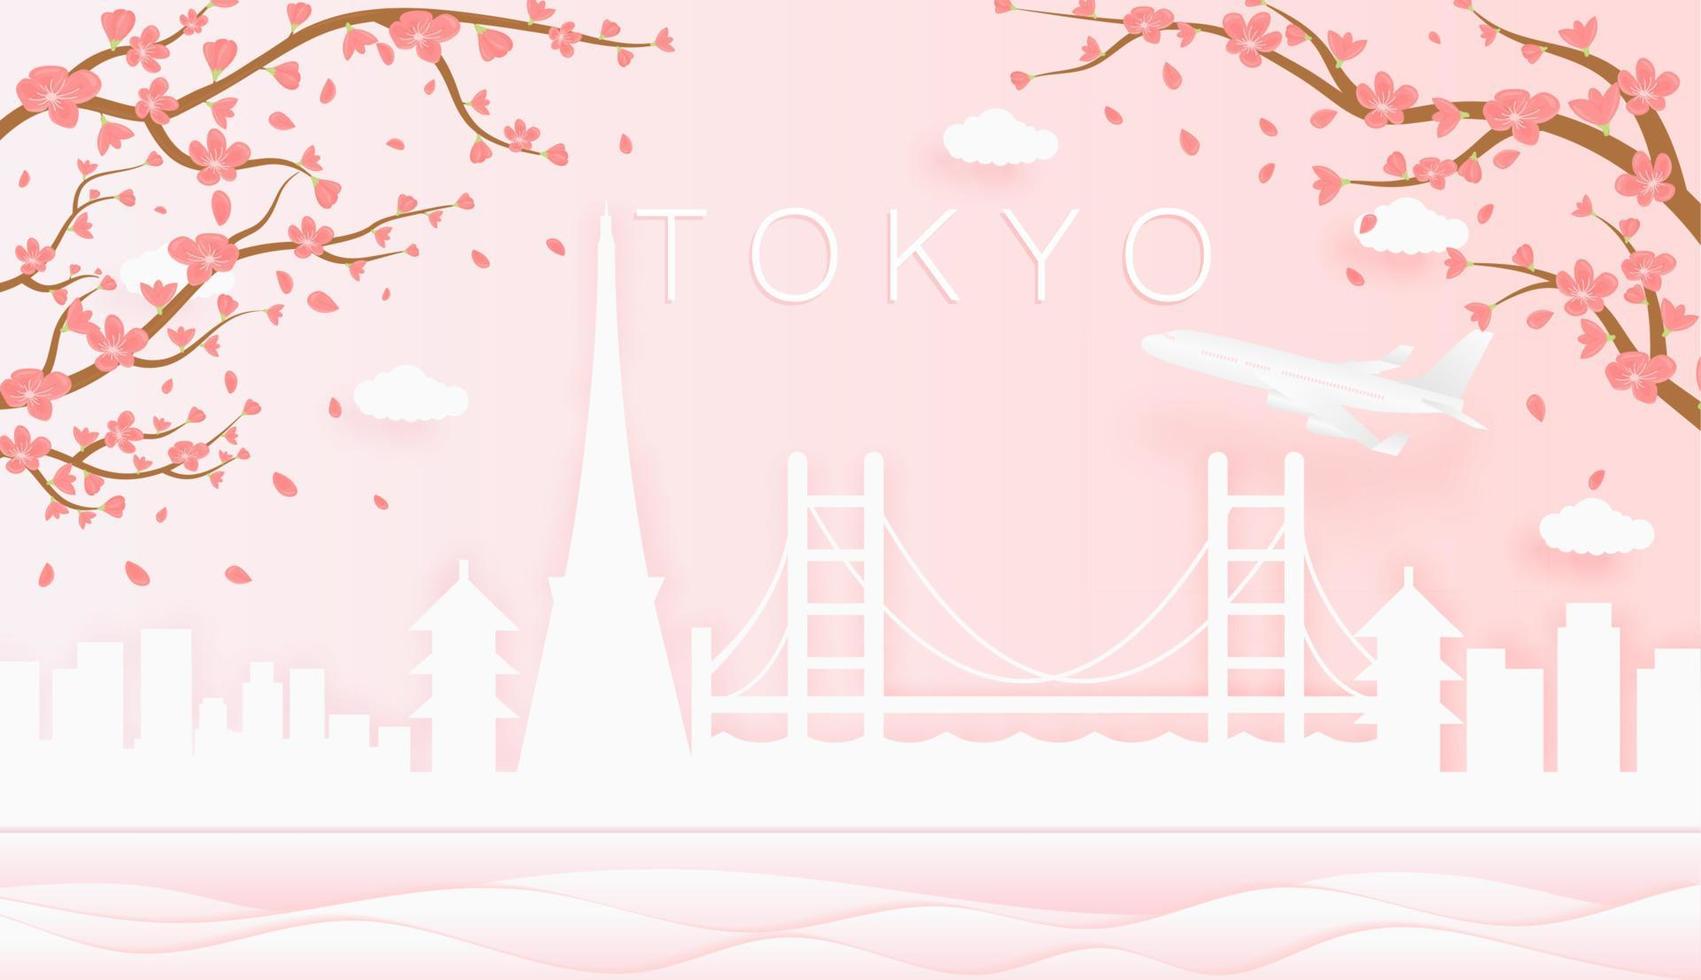 Panorama Reise Postkarte, Poster, Tour Werbung von Welt berühmt Sehenswürdigkeiten von Tokio, Frühling Jahreszeit mit Blühen Blumen im Baum Vektor Symbol